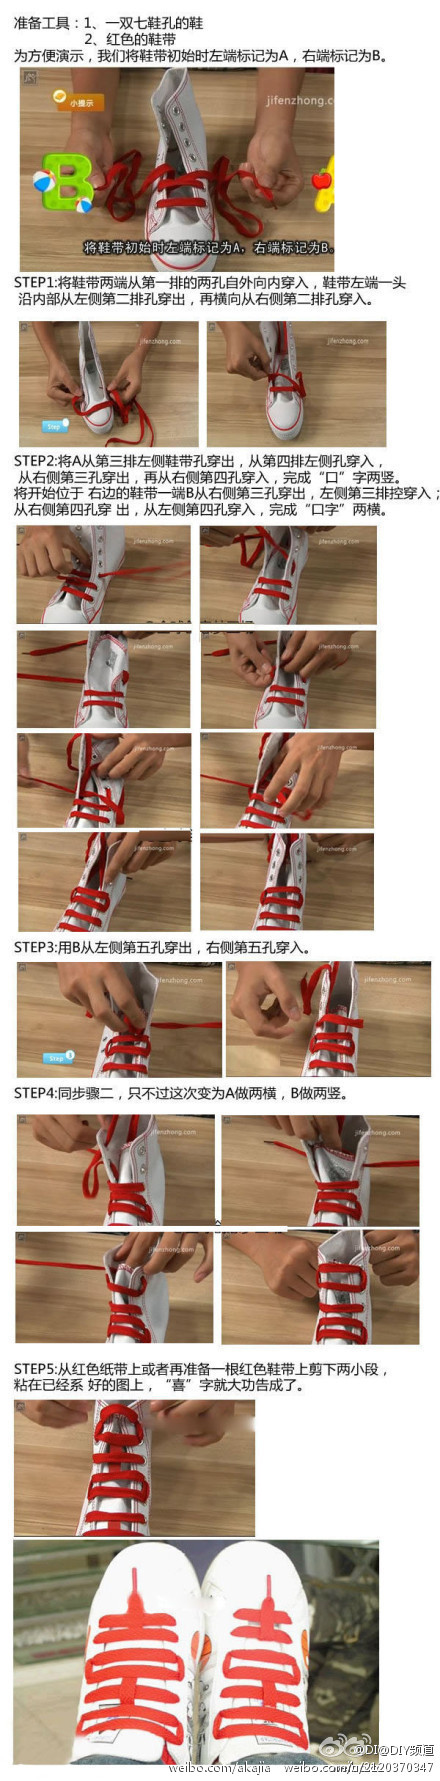 网红鞋带收尾绕圈系法图片